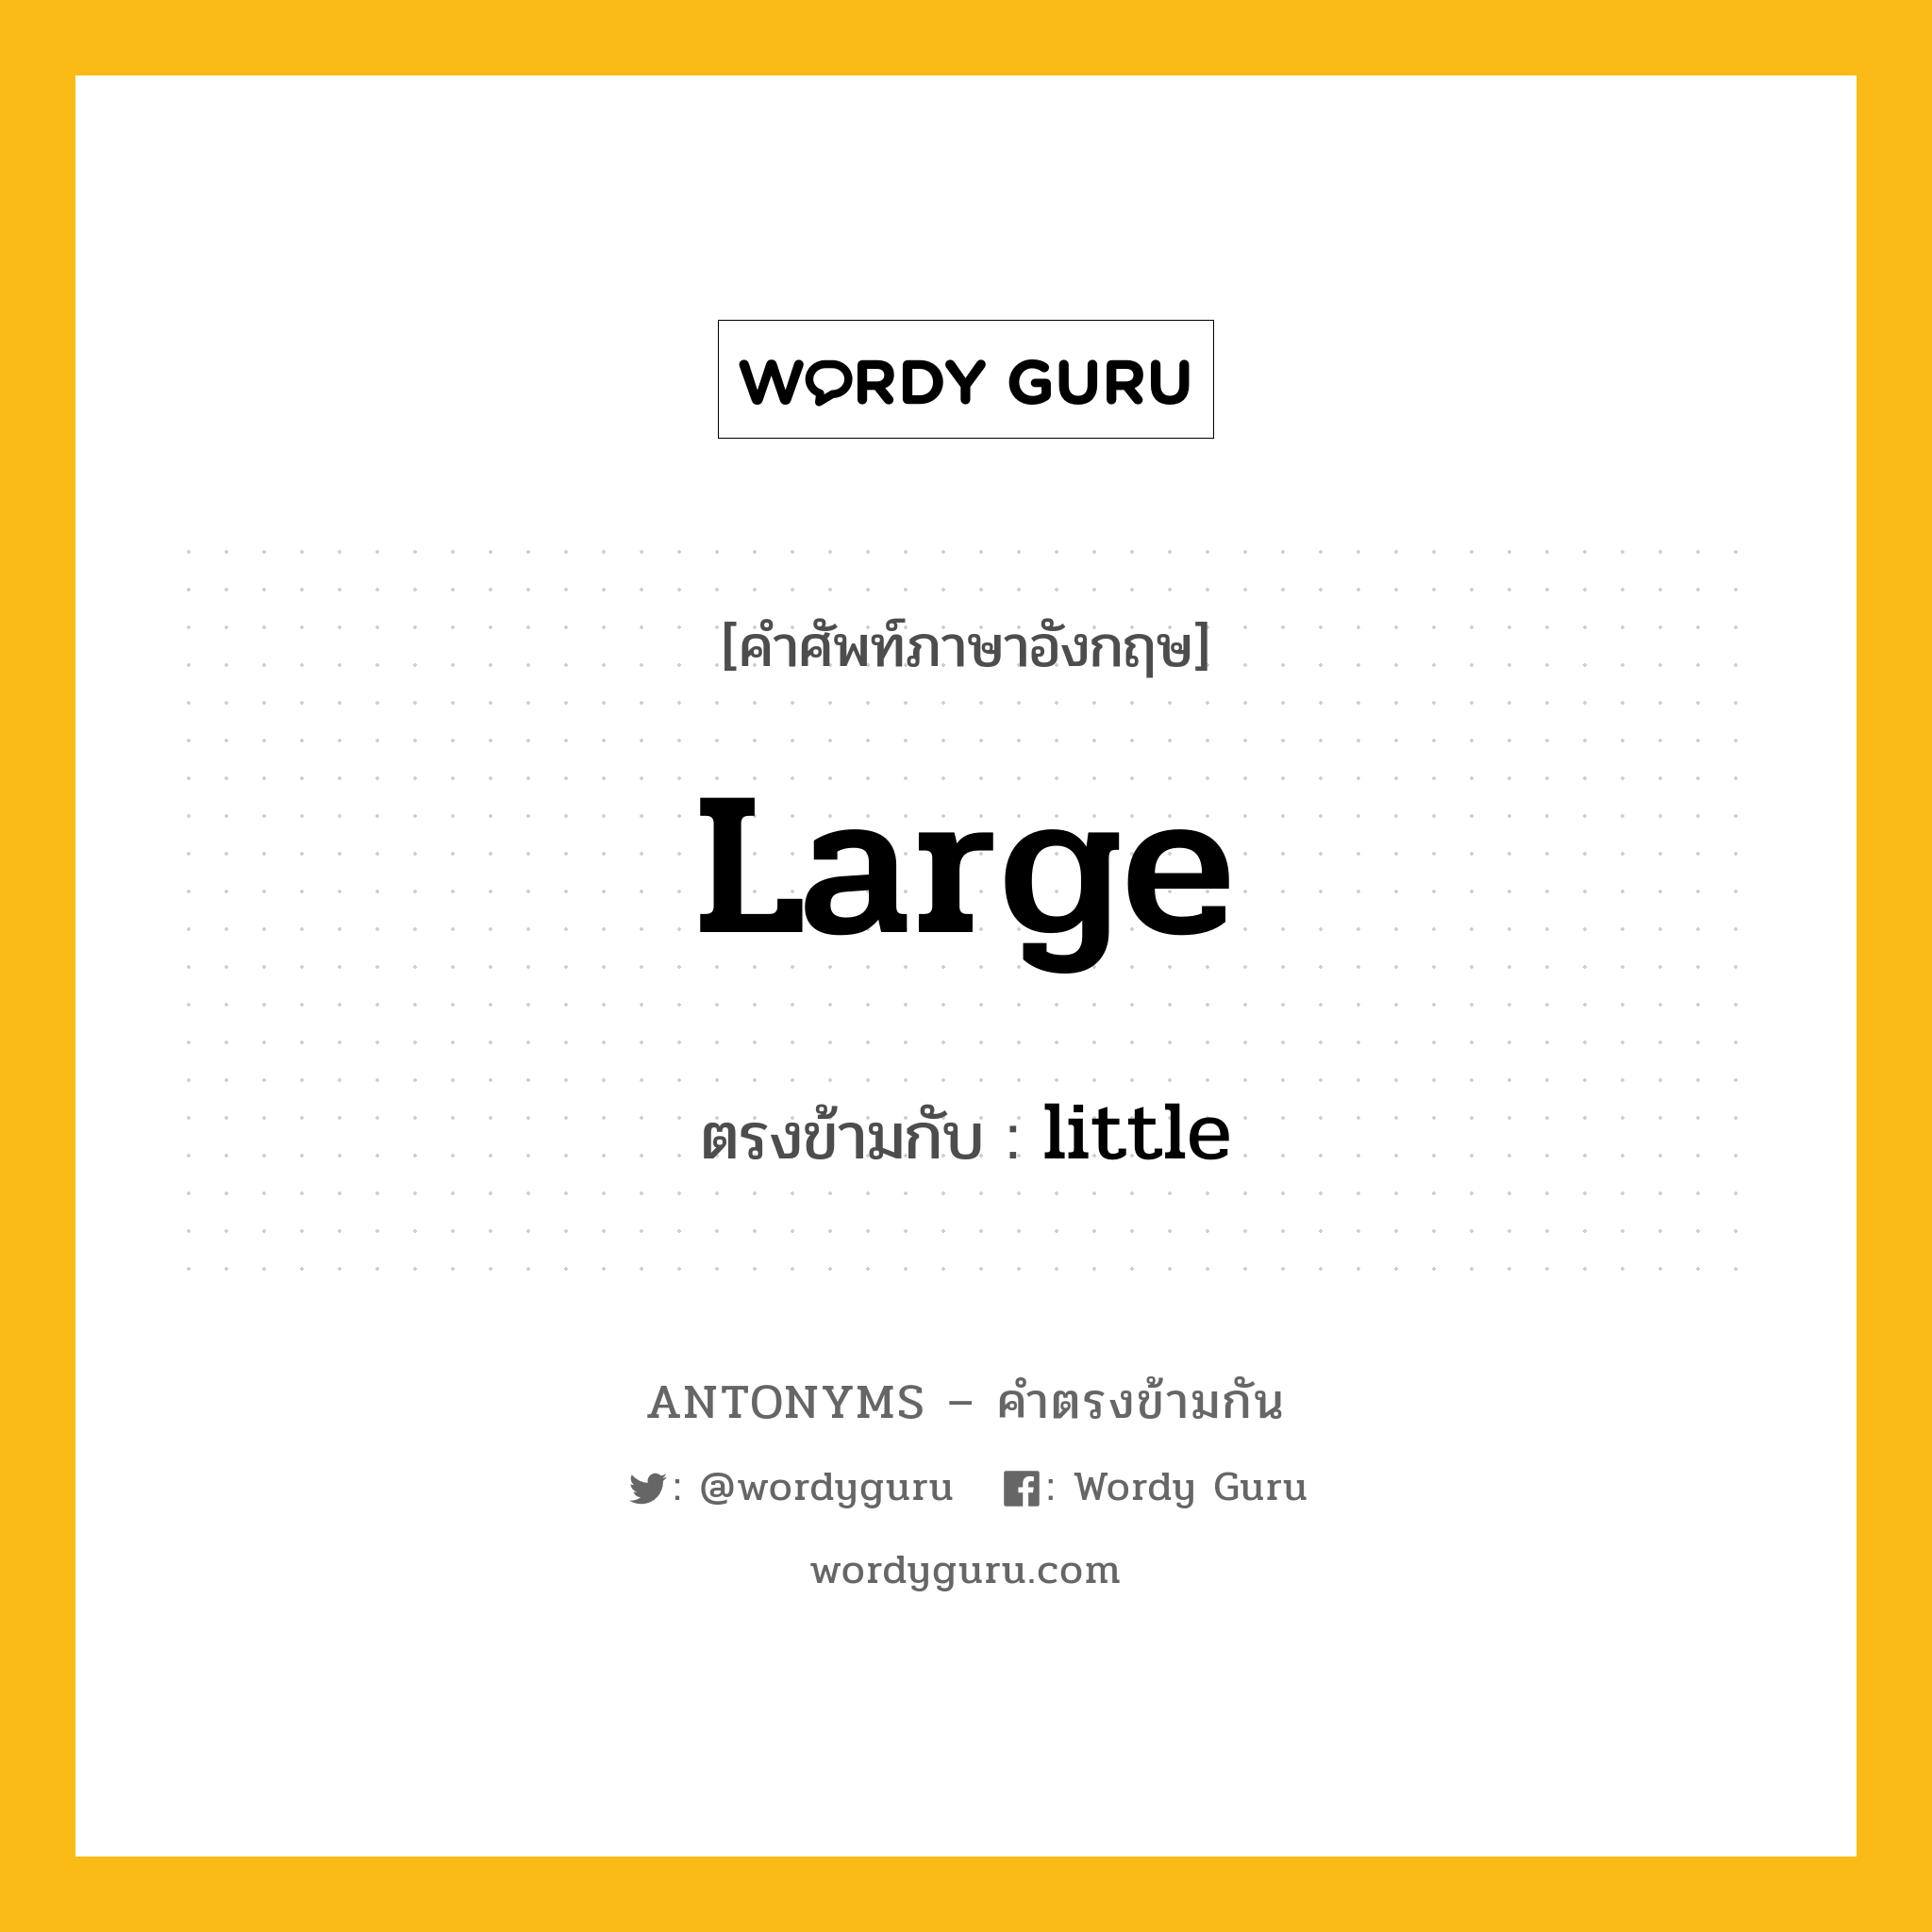 large เป็นคำตรงข้ามกับคำไหนบ้าง?, คำศัพท์ภาษาอังกฤษที่มีความหมายตรงข้ามกัน large ตรงข้ามกับ little หมวด little